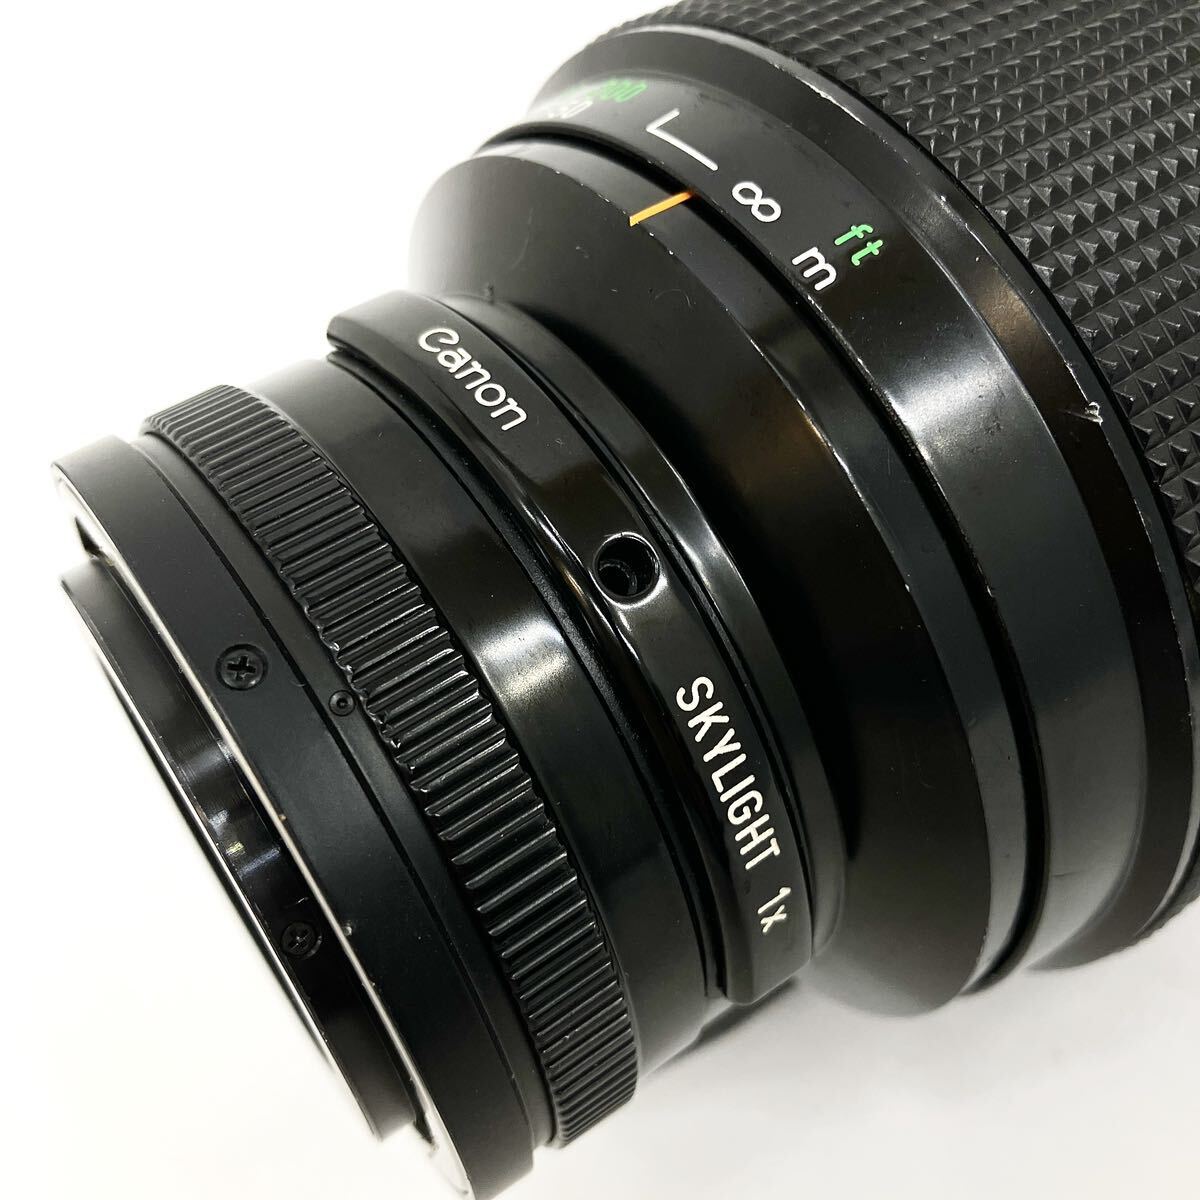 Canon キャノン REFLEX LENS 500mm 1:8 カメラレンズ マニュアルフォーカス alp川0415の画像5